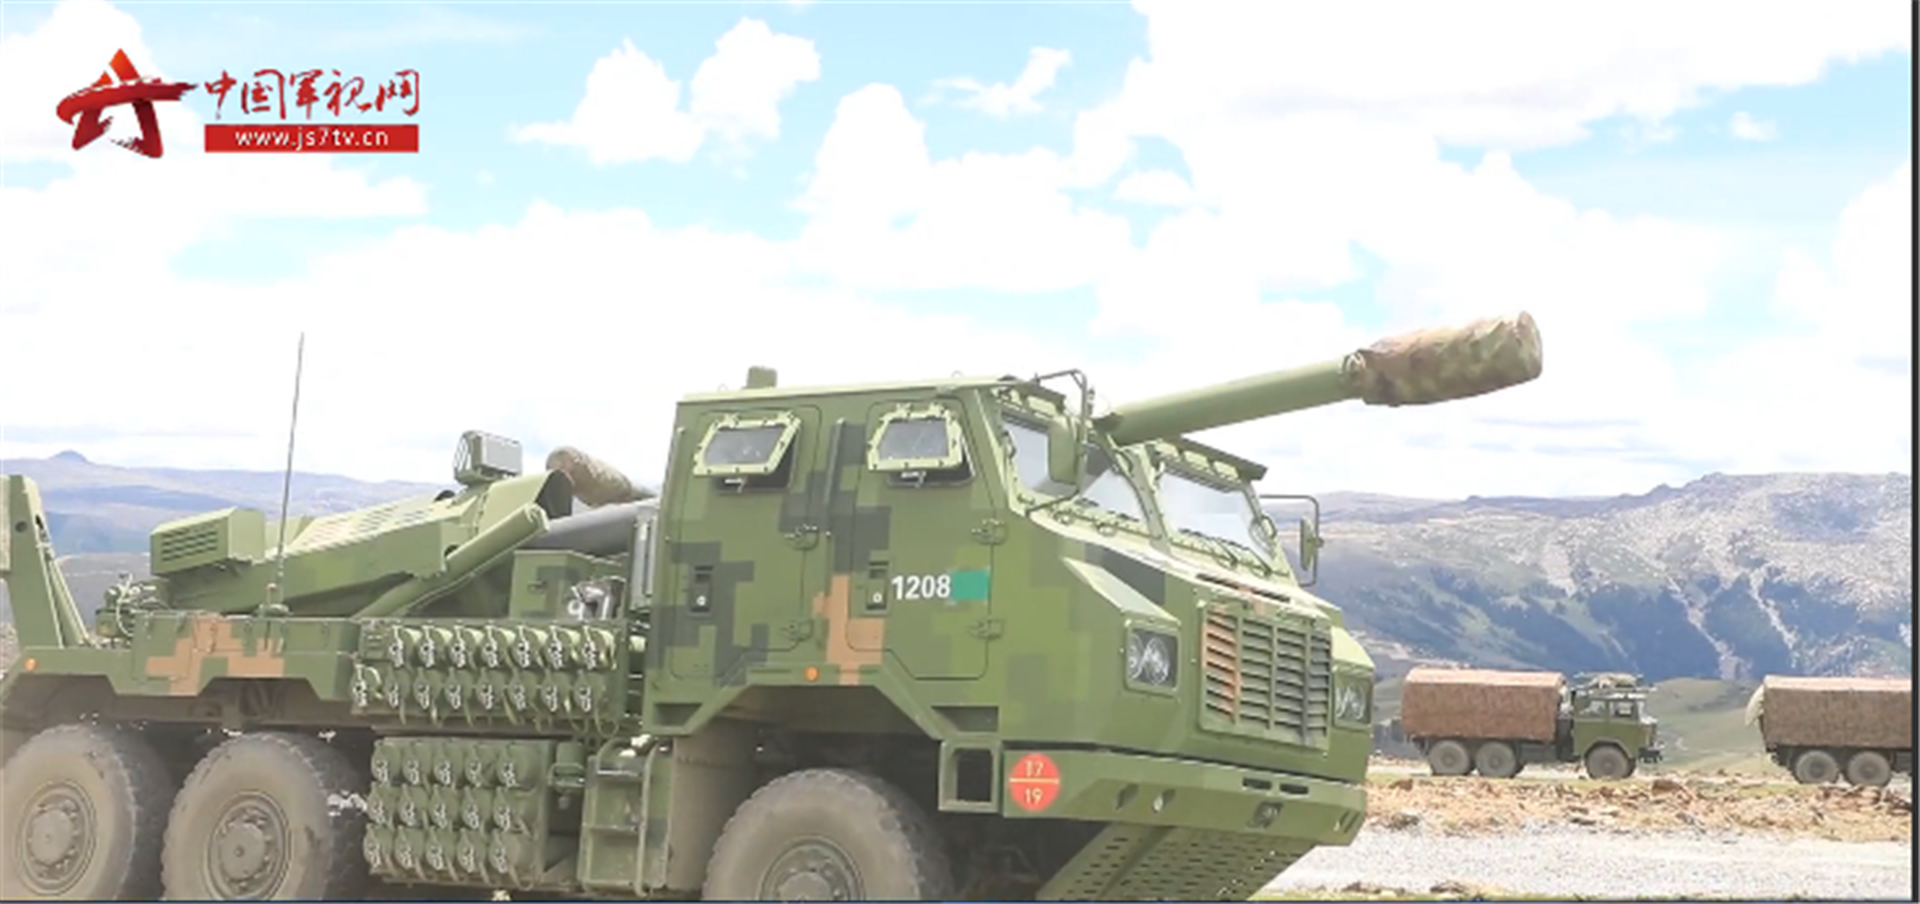 5月7日，解放军第75集团军某旅列装新型轮式步兵战车。该型车辆具有机动性较强的火力，是陆军快速反应力量的主要装备之一，有全天候作战能力。（中国军事网截图）